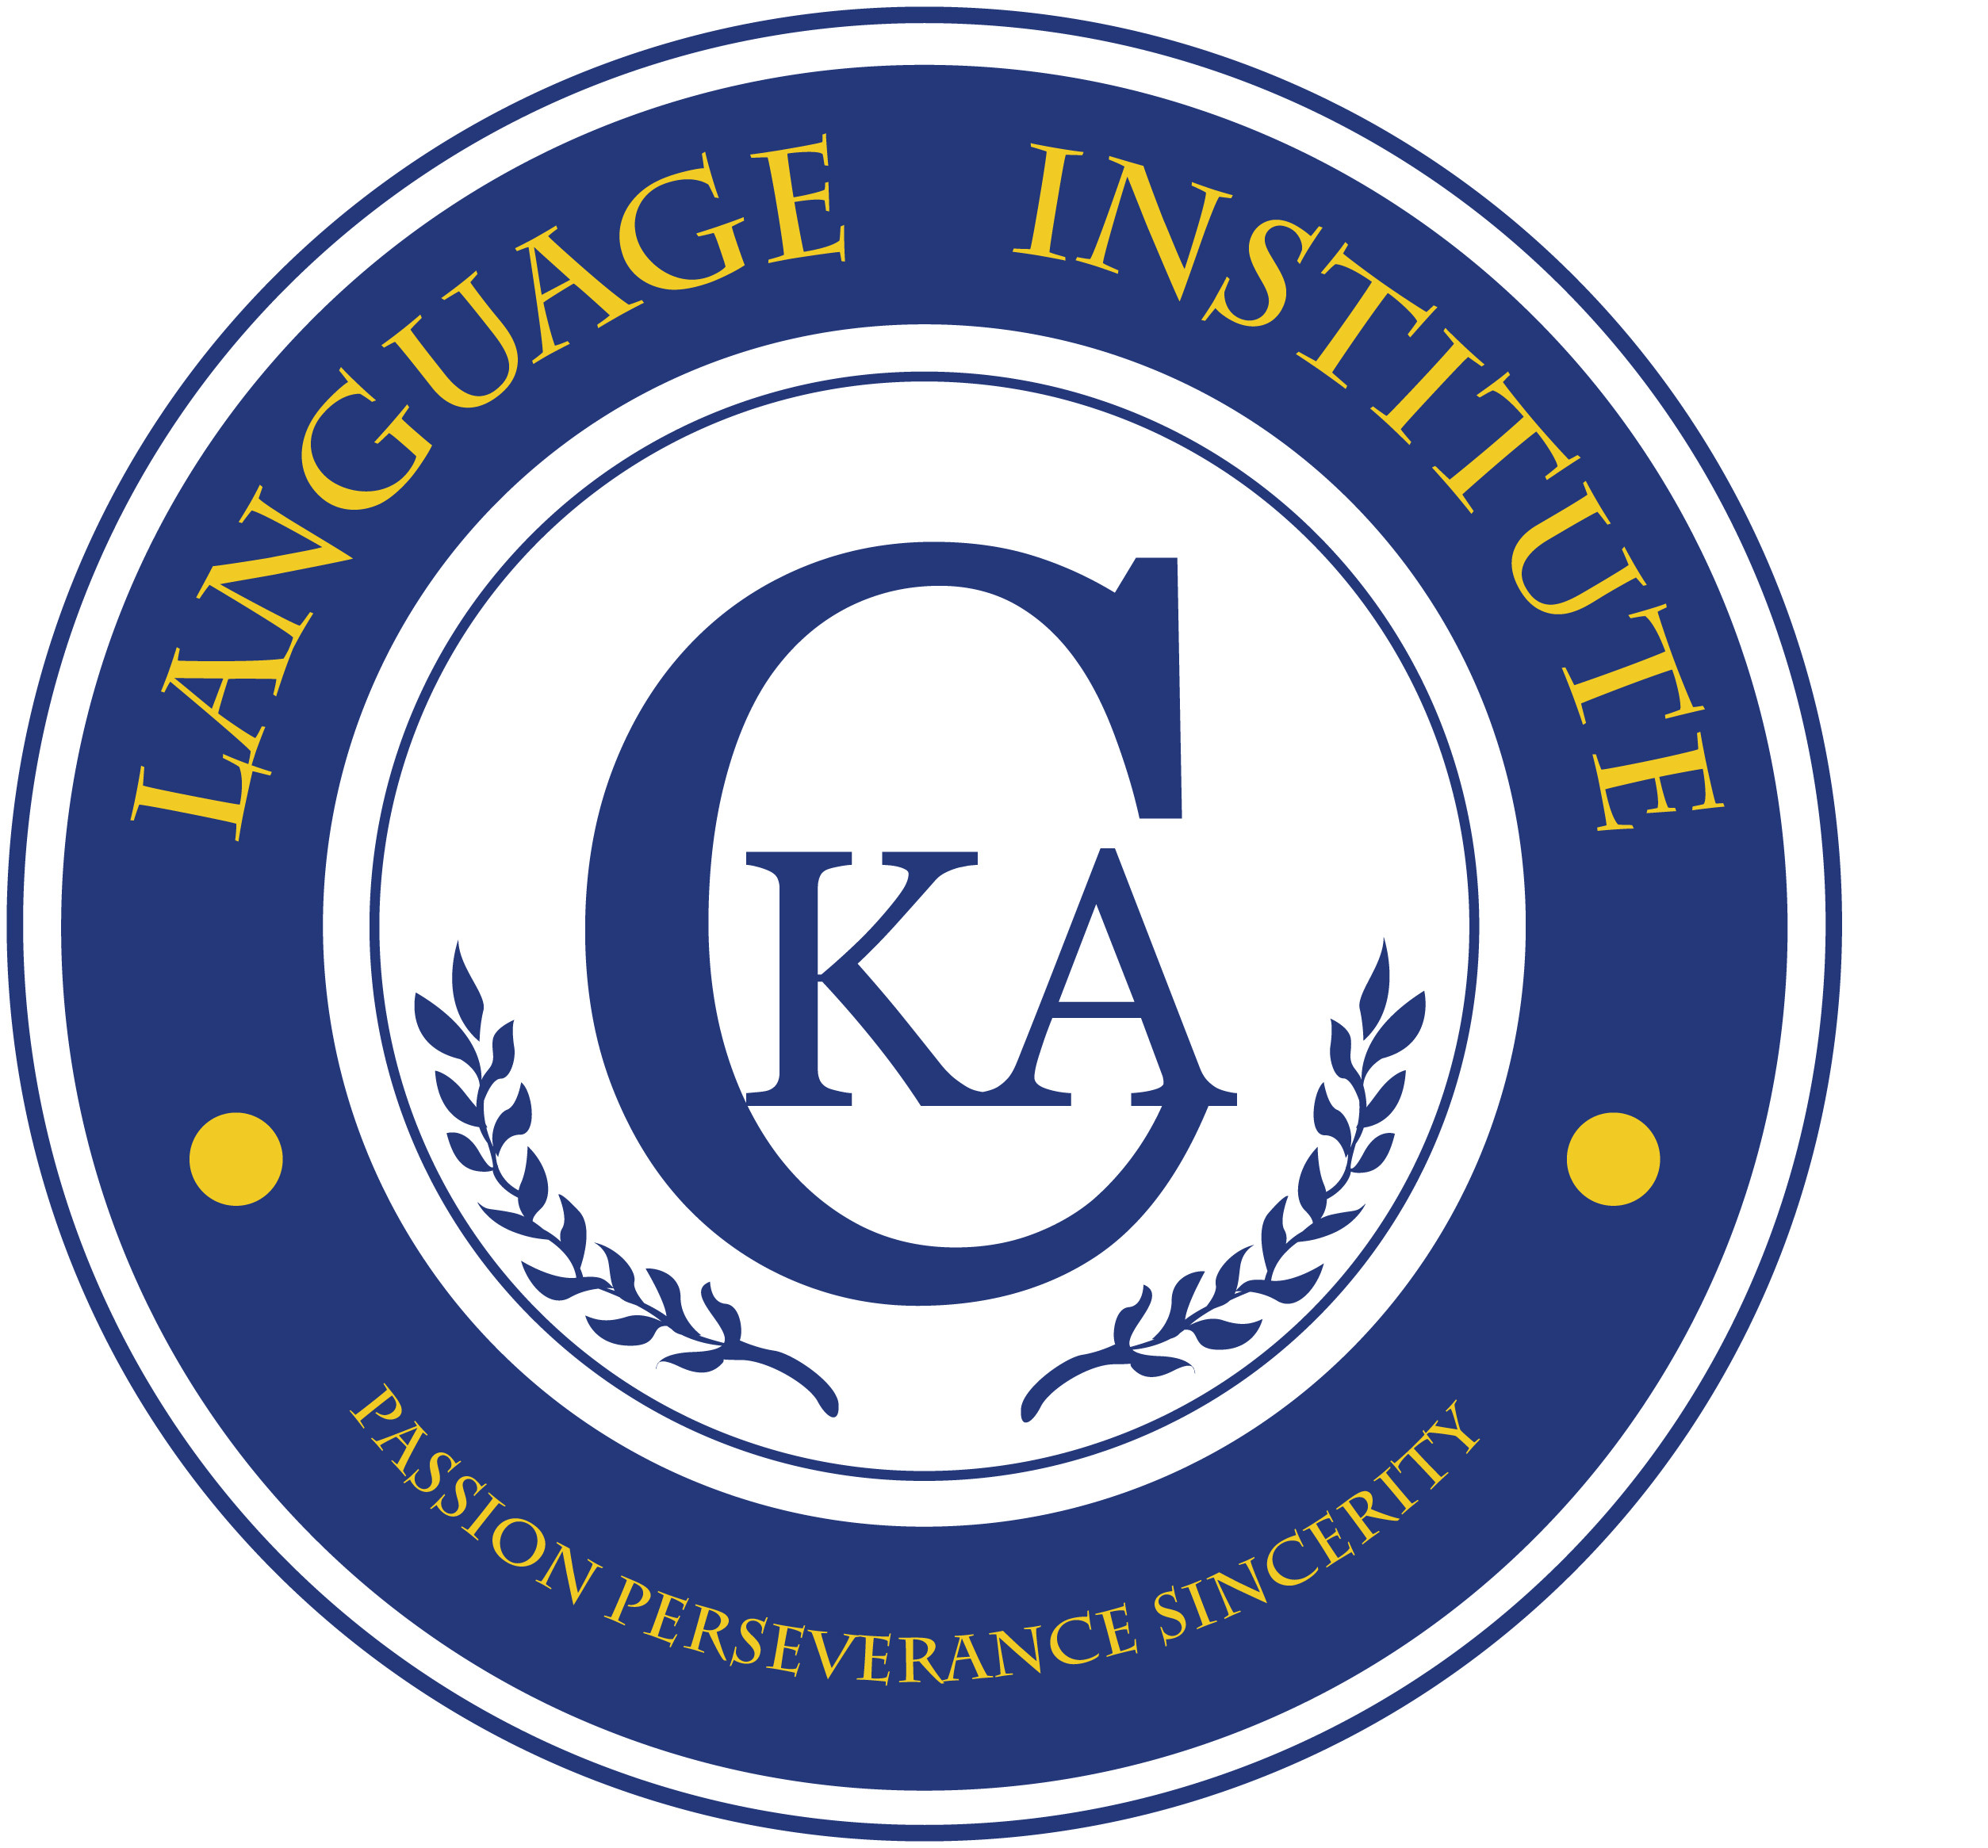 CKA Language Institute